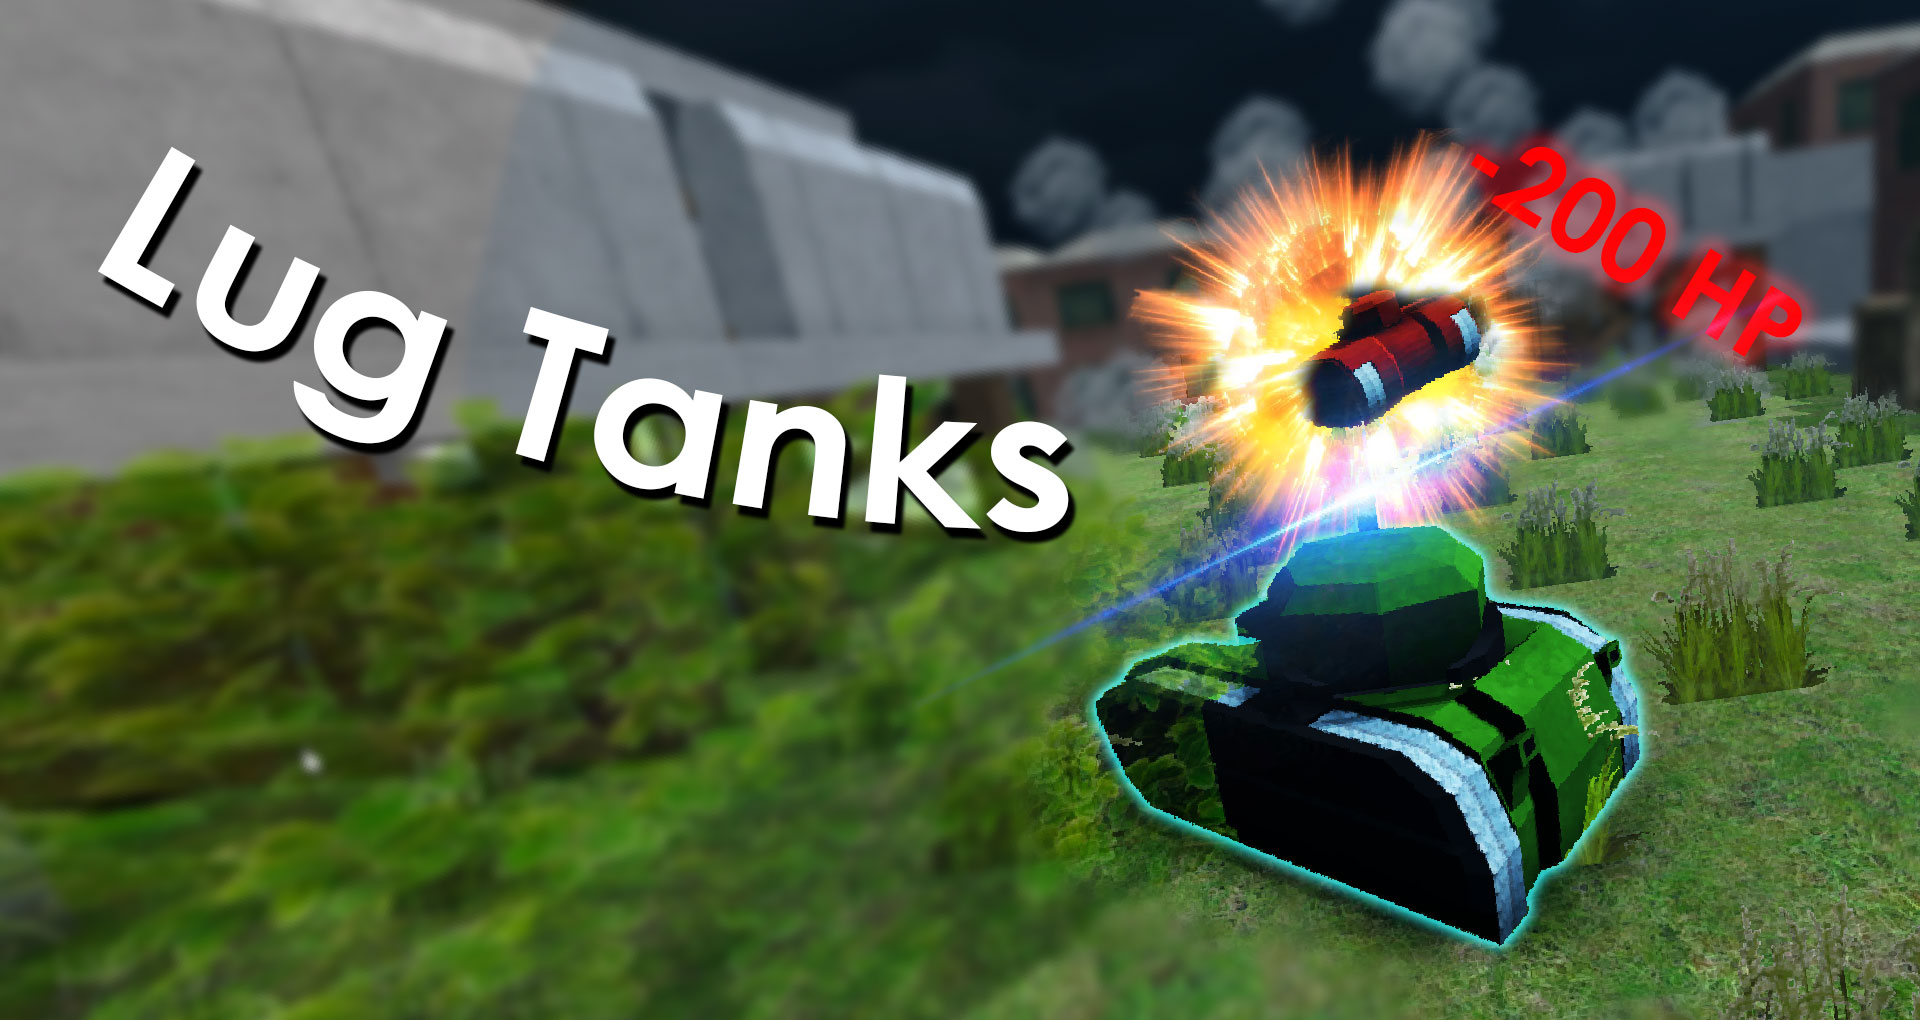 Lug Tanks